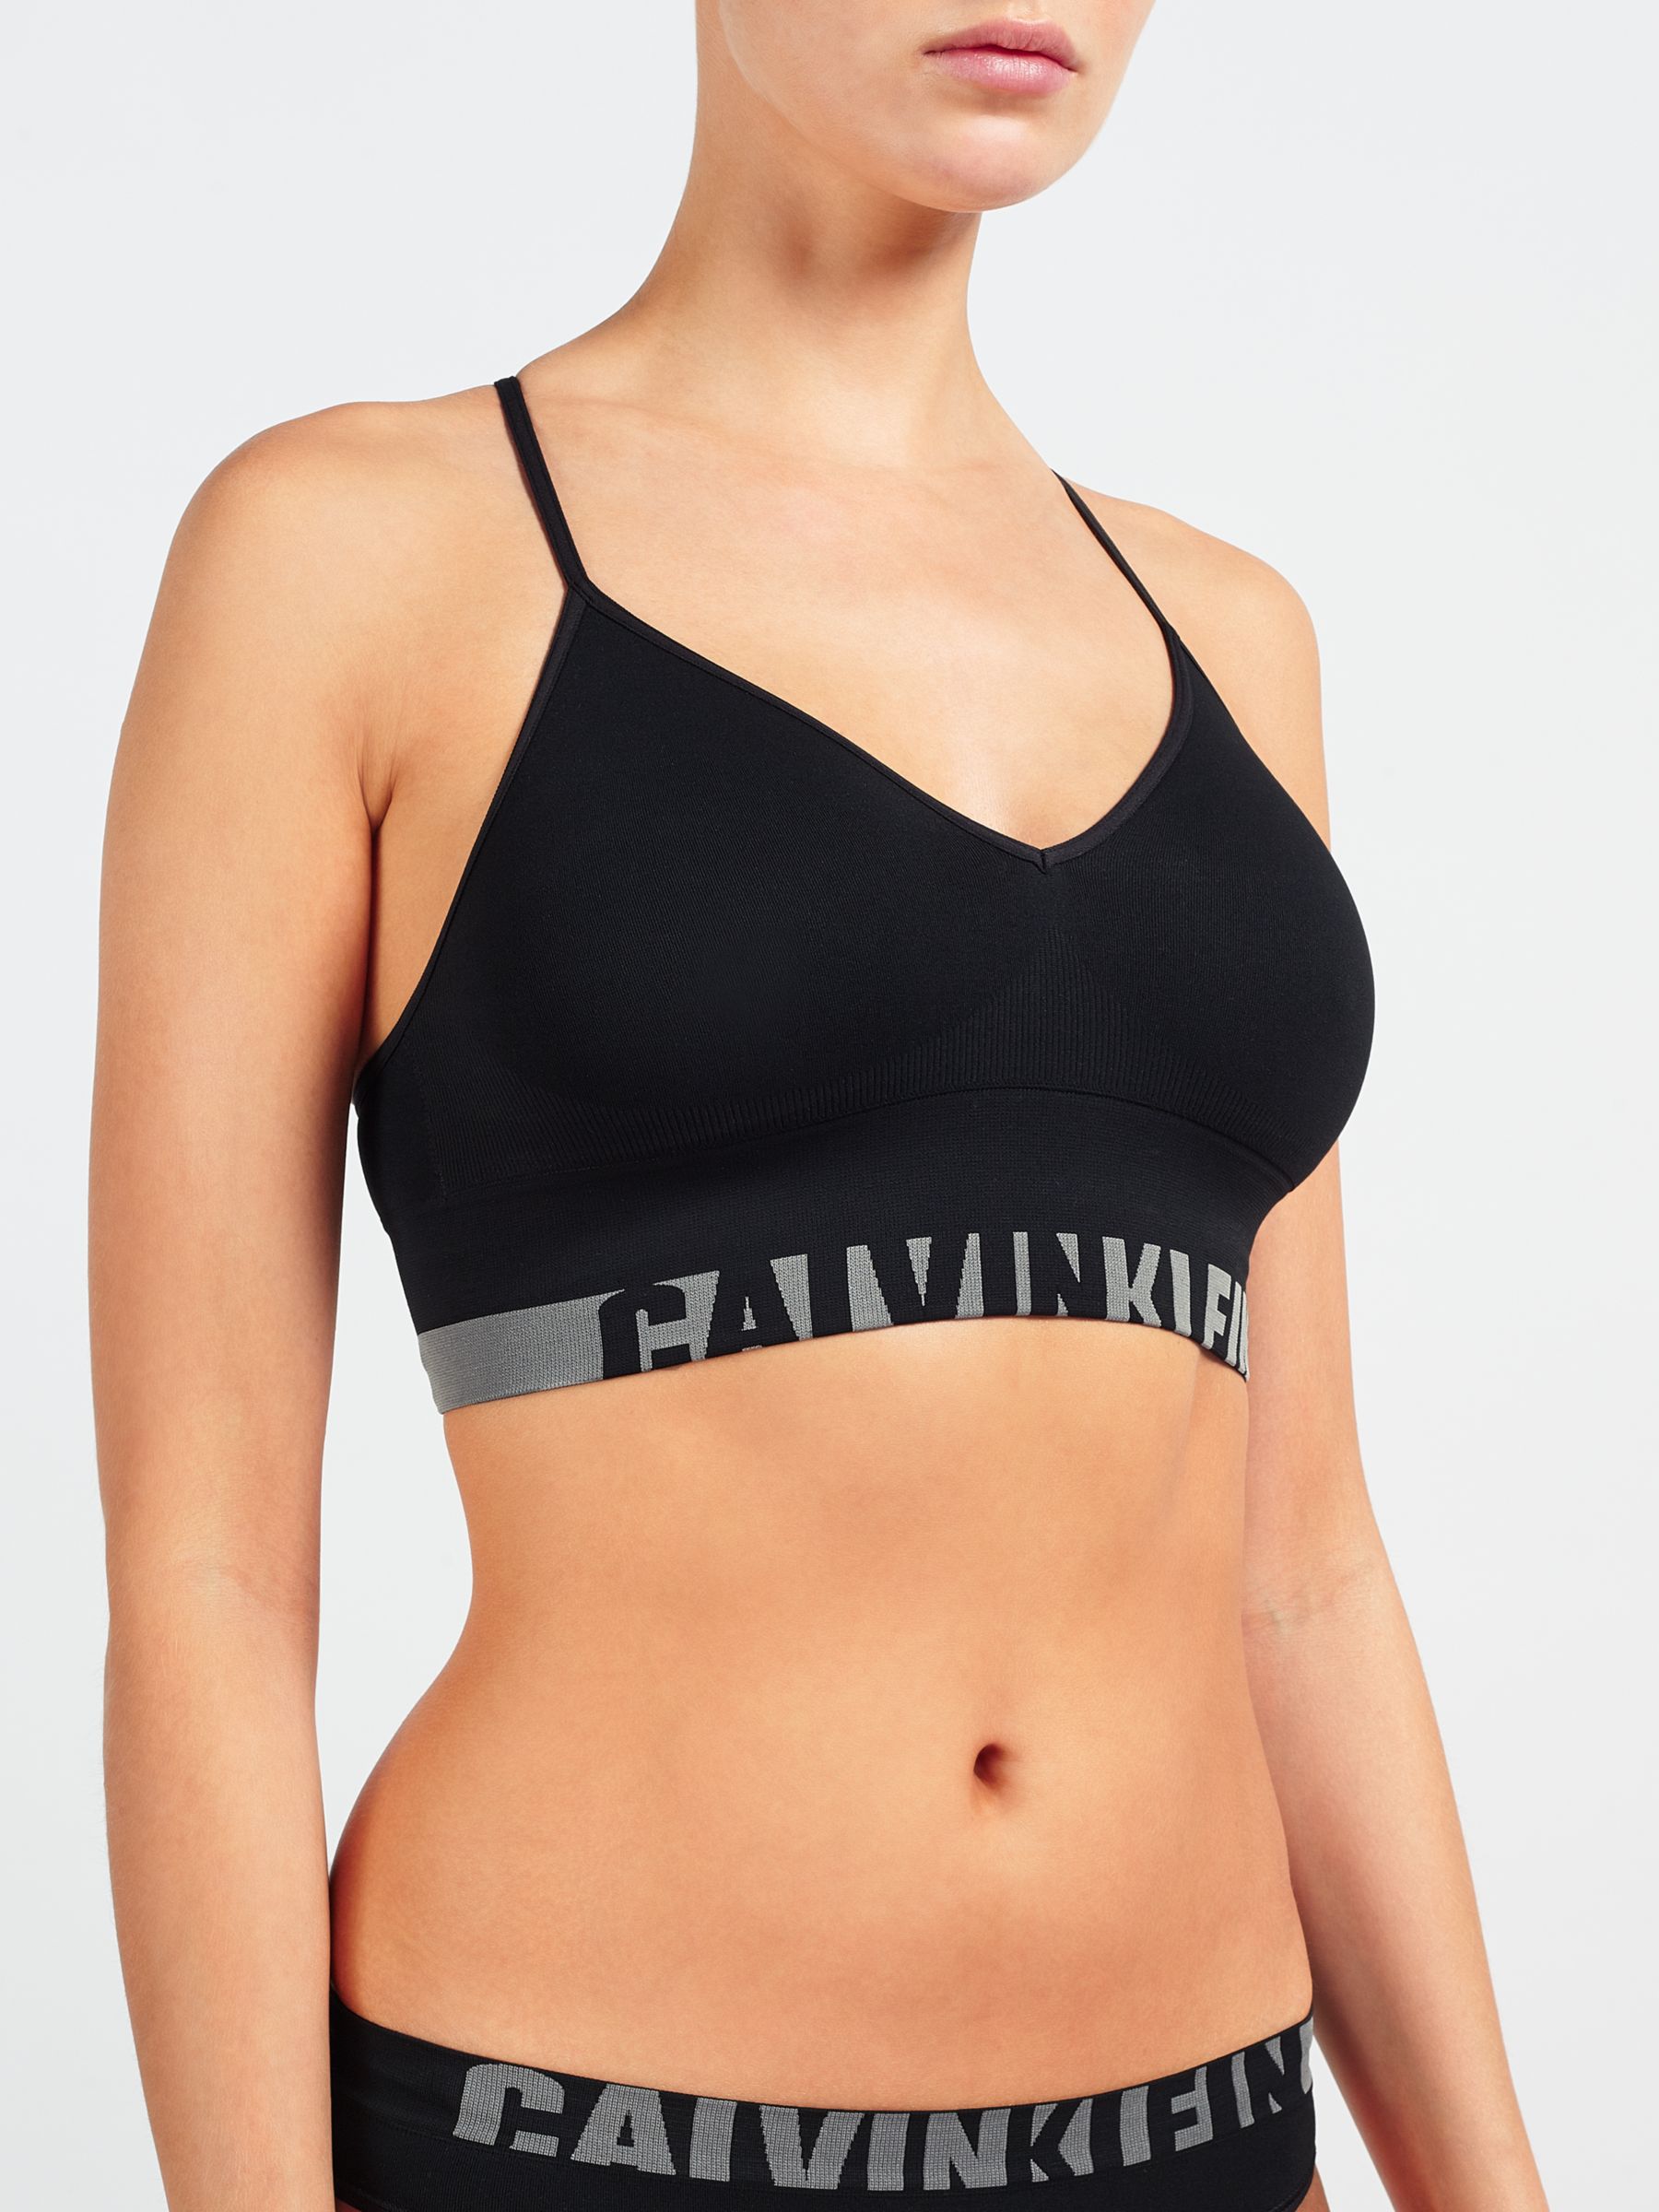 Calvin Klein Underwear Seamless Bralette, Black, M